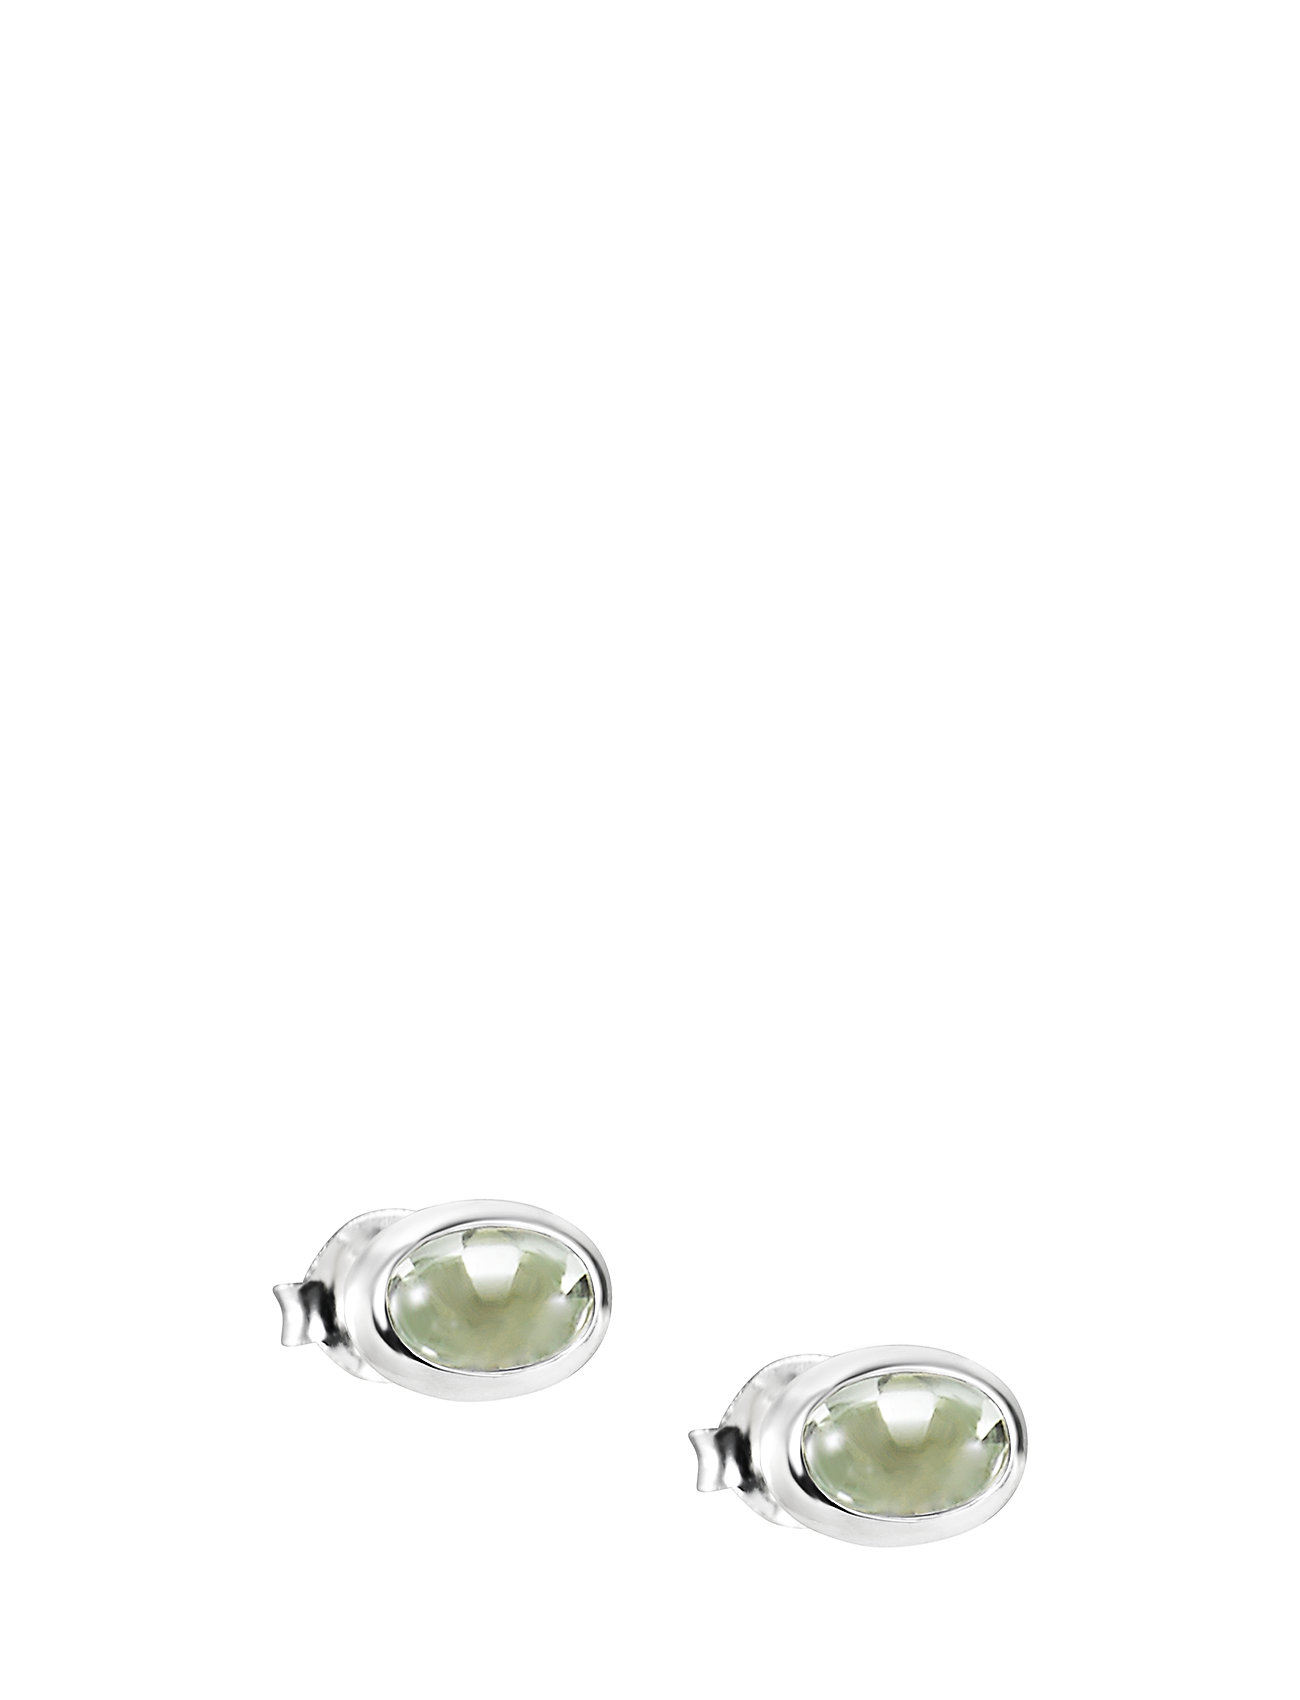 Love Bead Ear Silver - Green Quartz Accessories Jewellery Earrings Studs Hopea Efva Attling